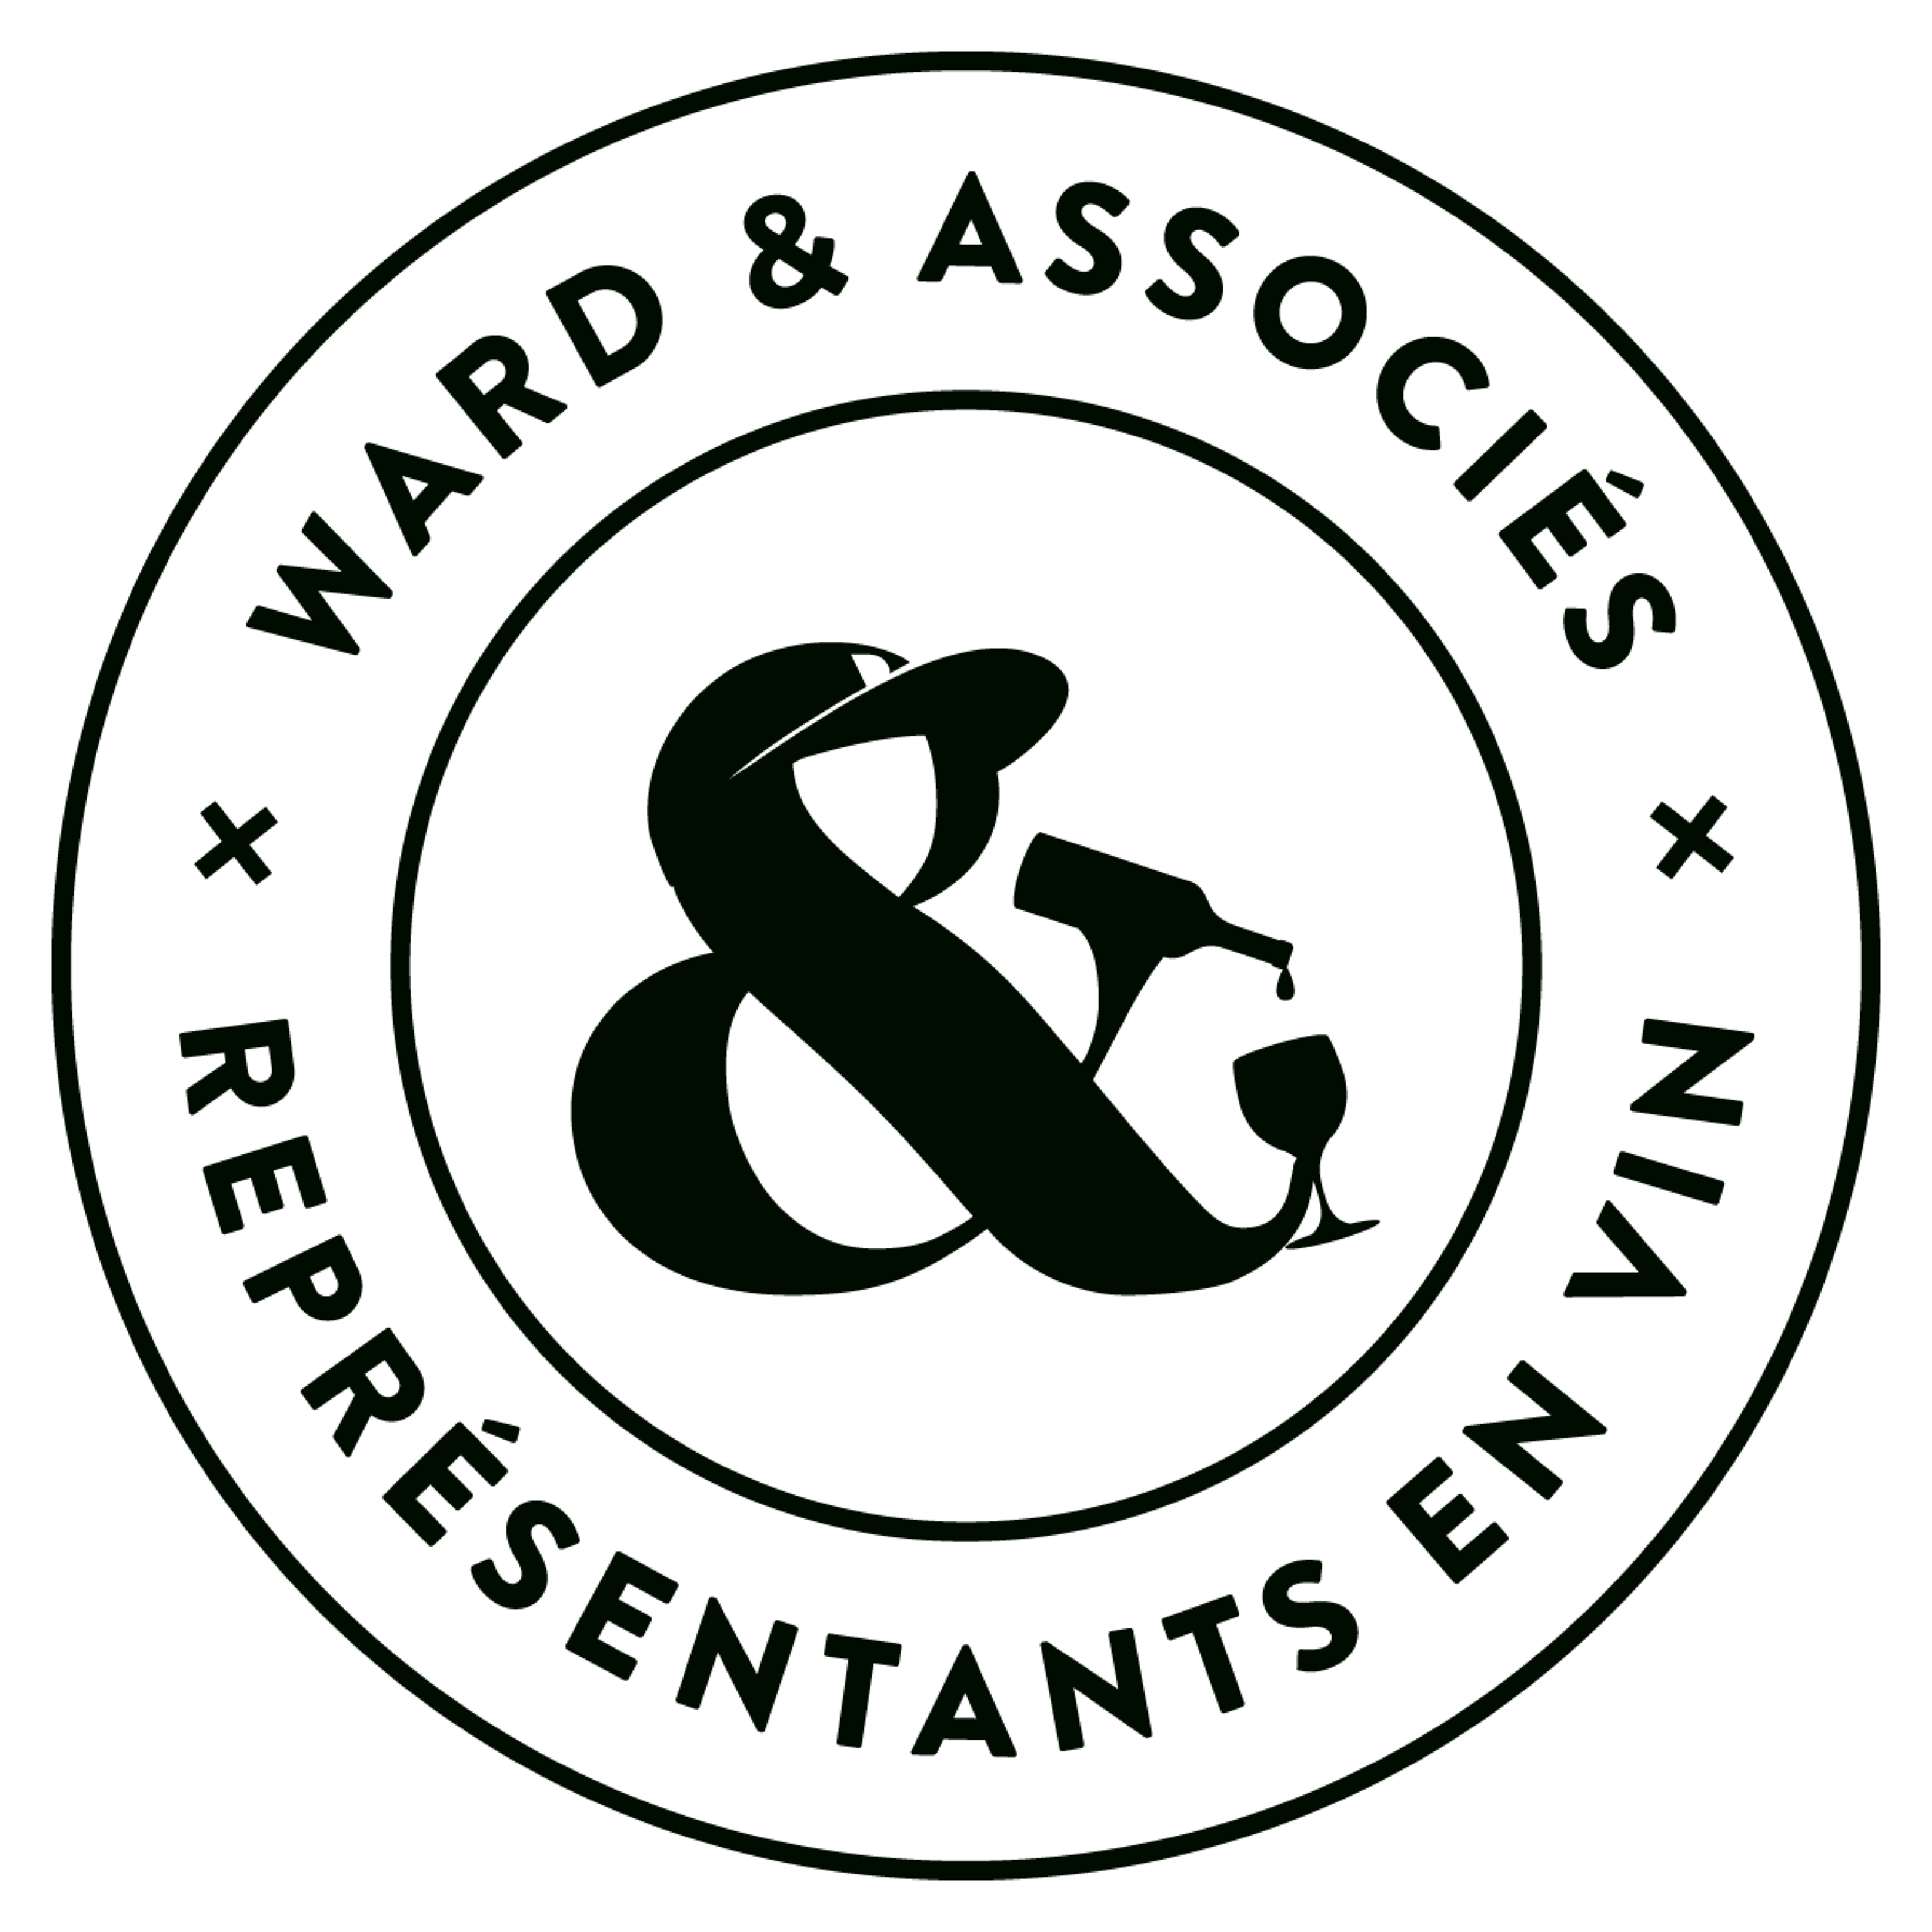 ward logo